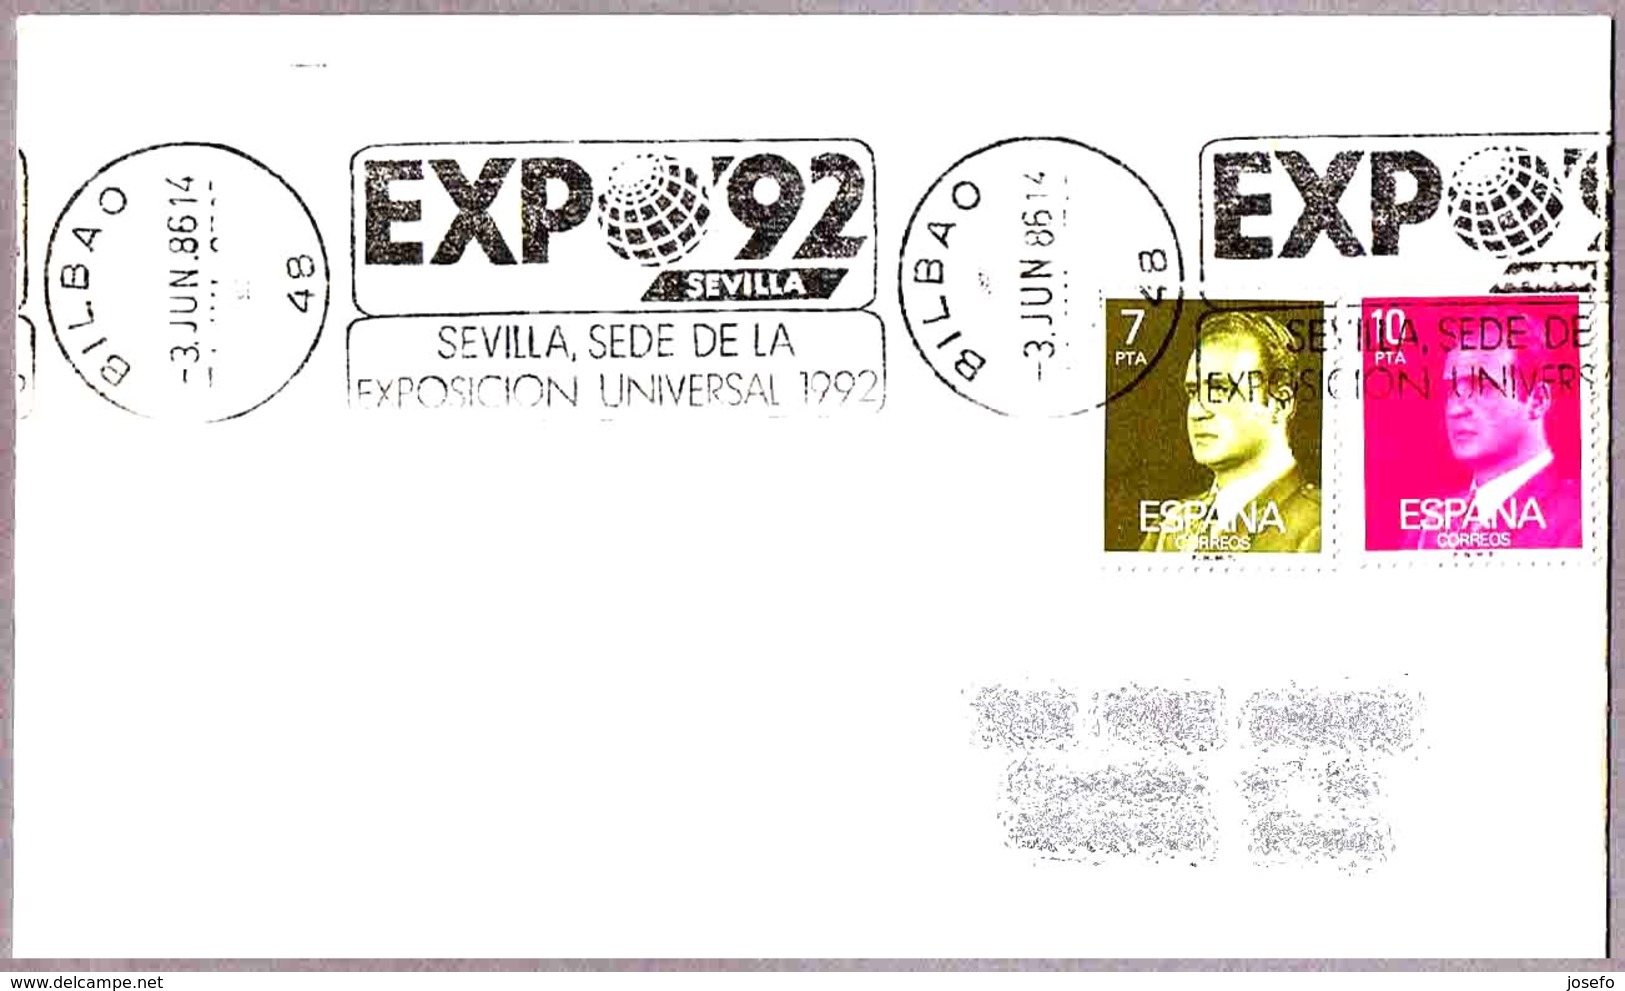 EXPO'92 - SEVILLA. Bilbao 1986 - 1992 – Sevilla (España)